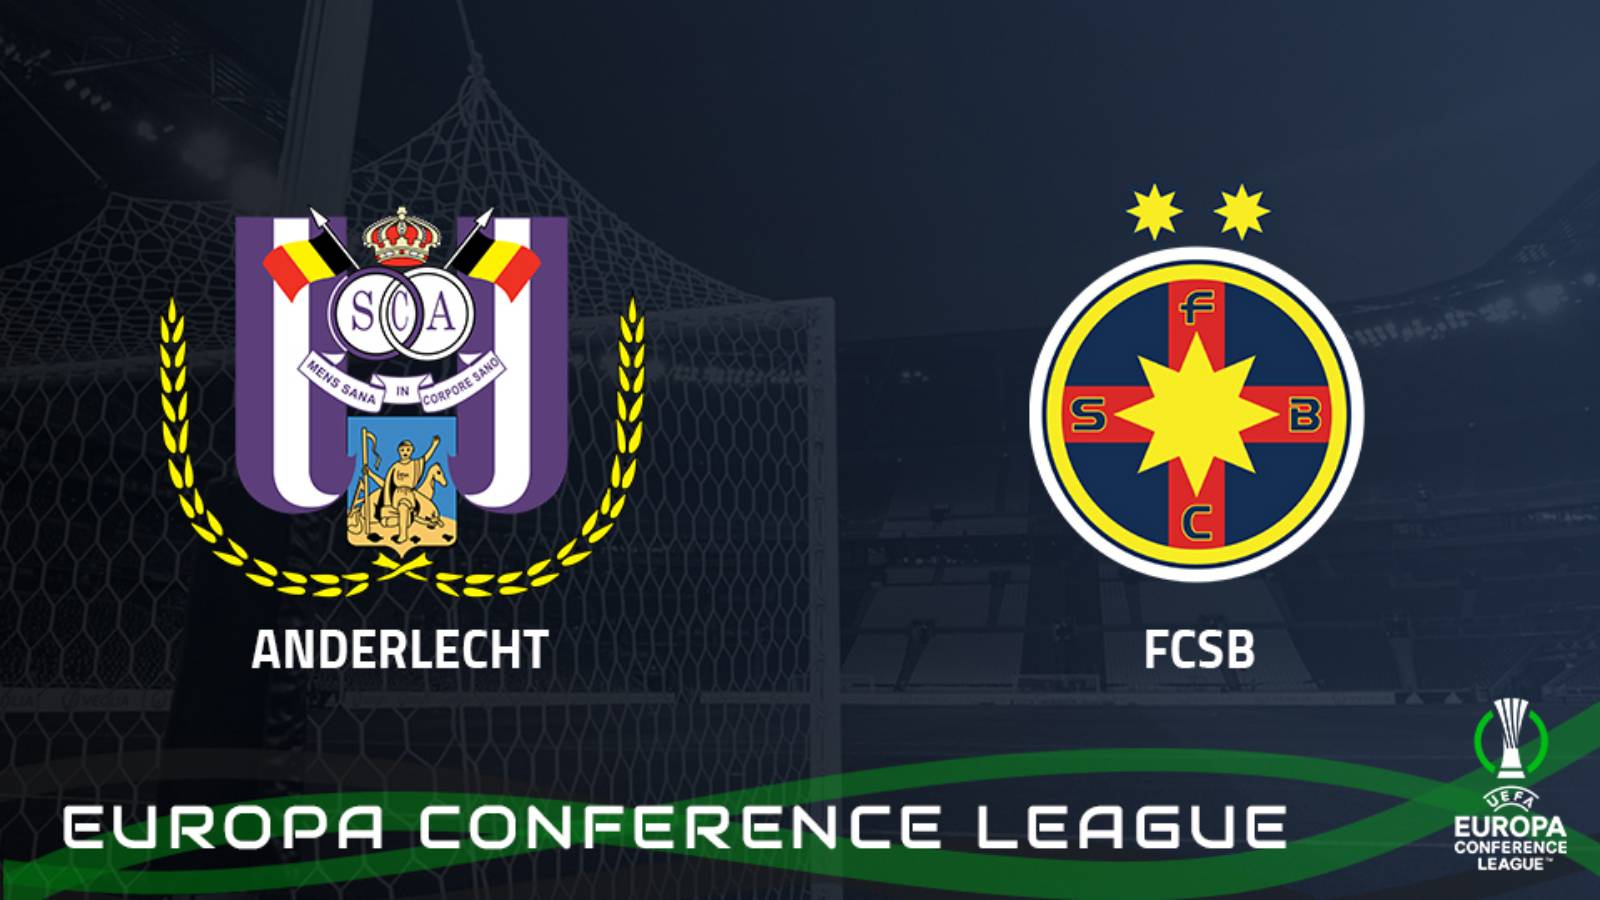 ANDERLECHT – FCSB LIVE PRO ARENA Liga de conferencias de la UEFA